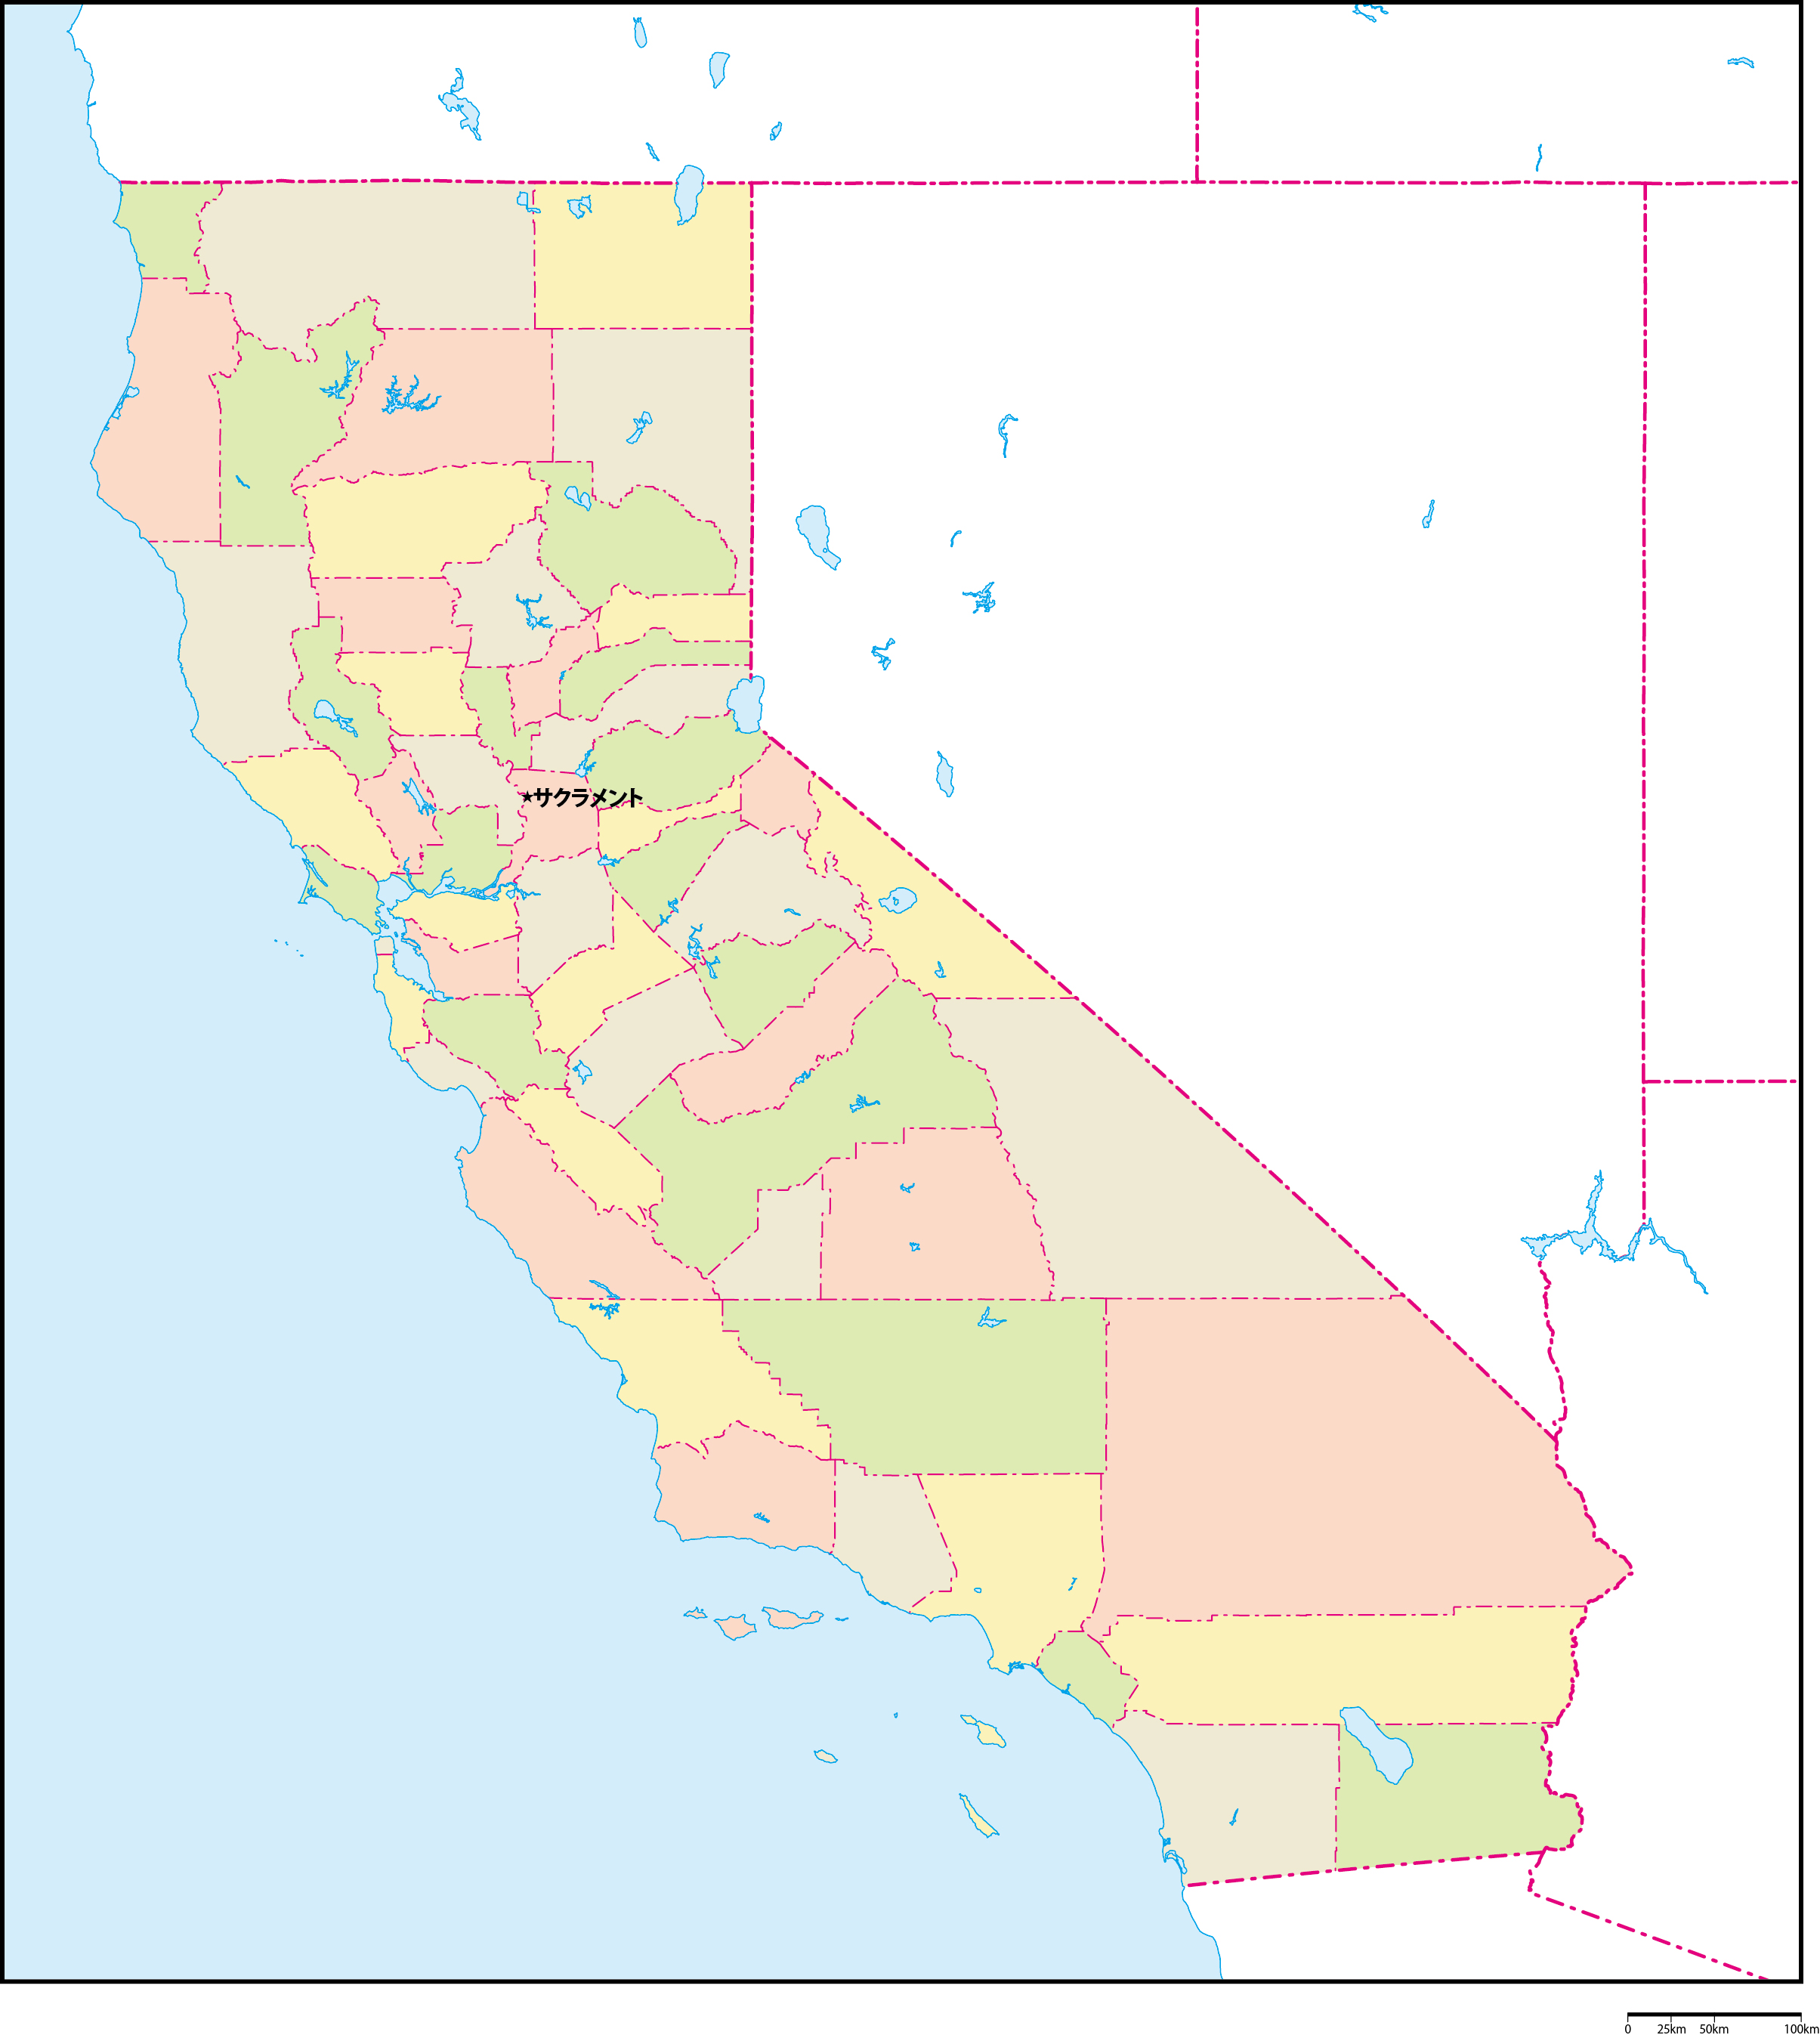 カリフォルニア州郡色分け地図州都あり(日本語)フリーデータの画像